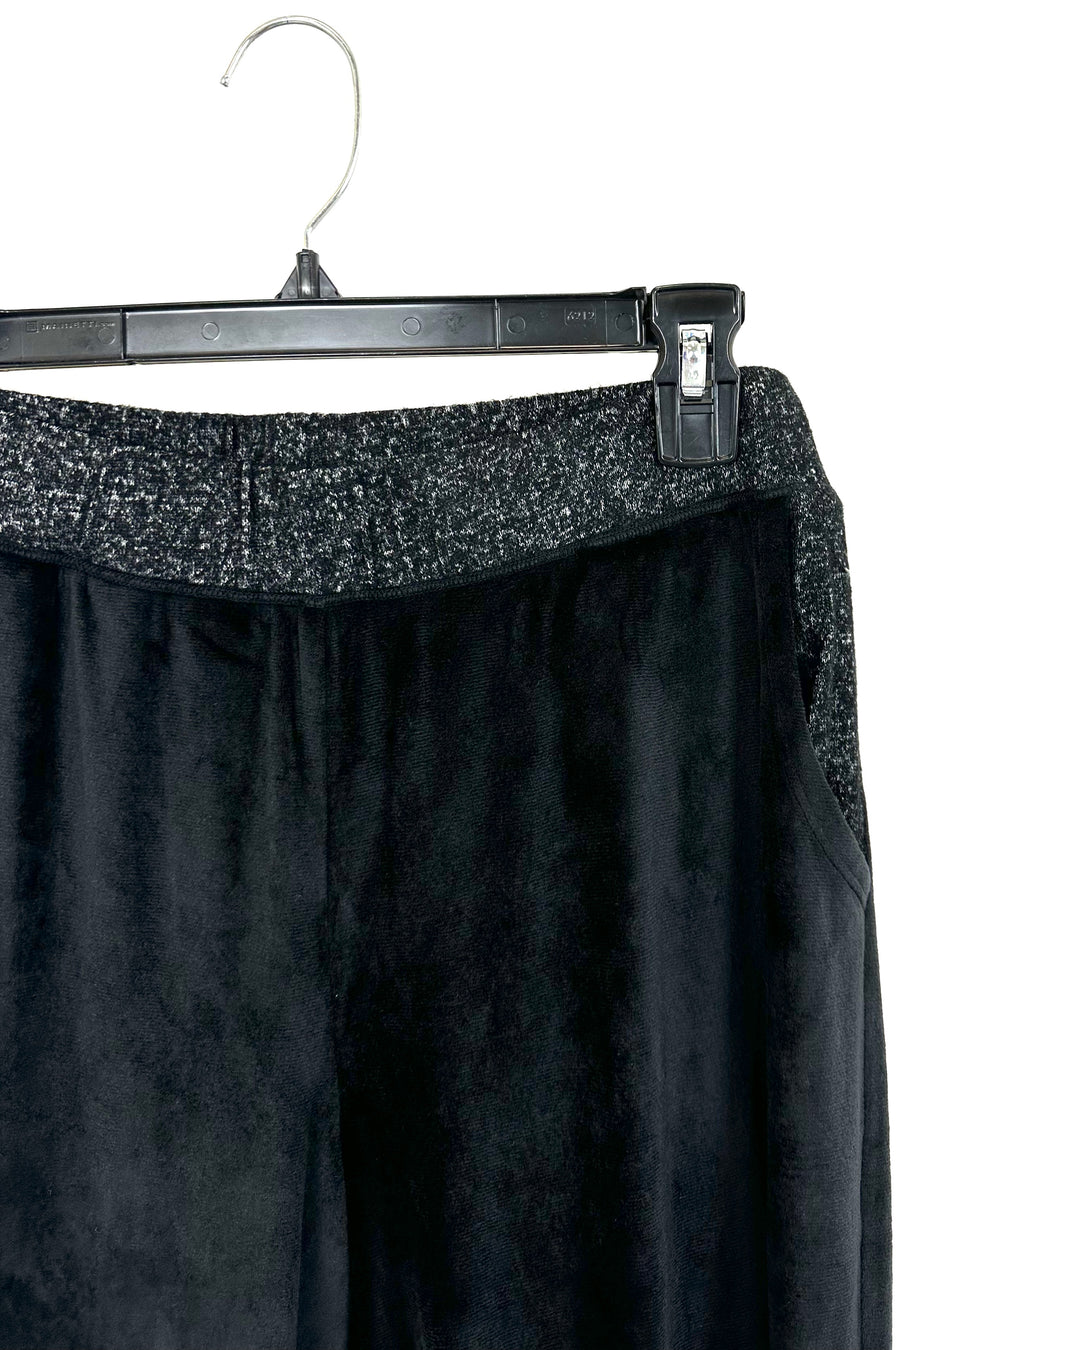 Black Velvet Pants - Size 10-12